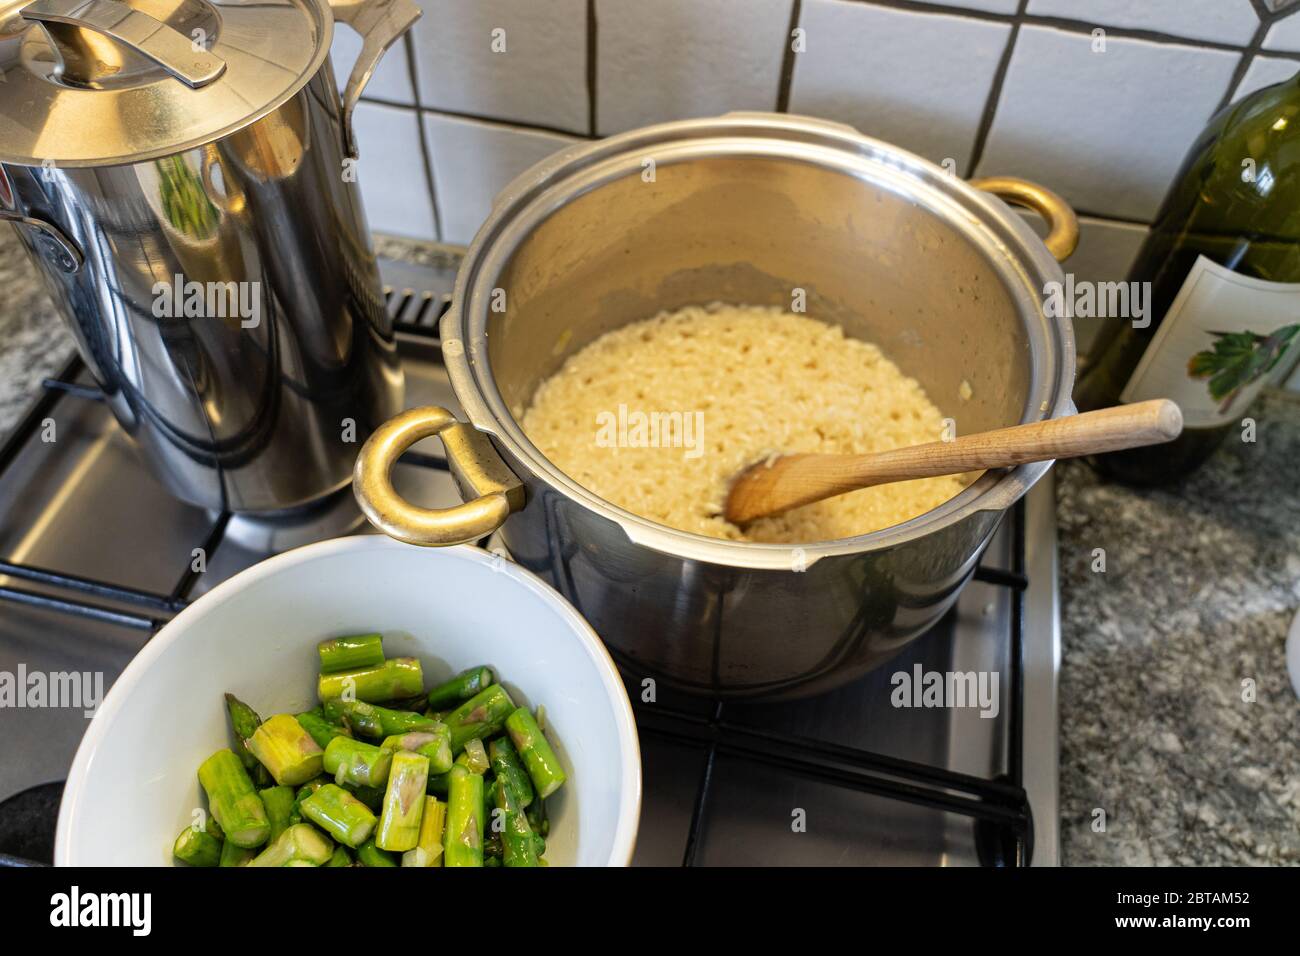 Risotto Reis mit Spargel, Zwiebeln und Weißwein kochen. Spargel in Scheiben geschnitten in einer Schüssel vor der Pfanne mit Reis. Hohe Winkelansicht. Stockfoto